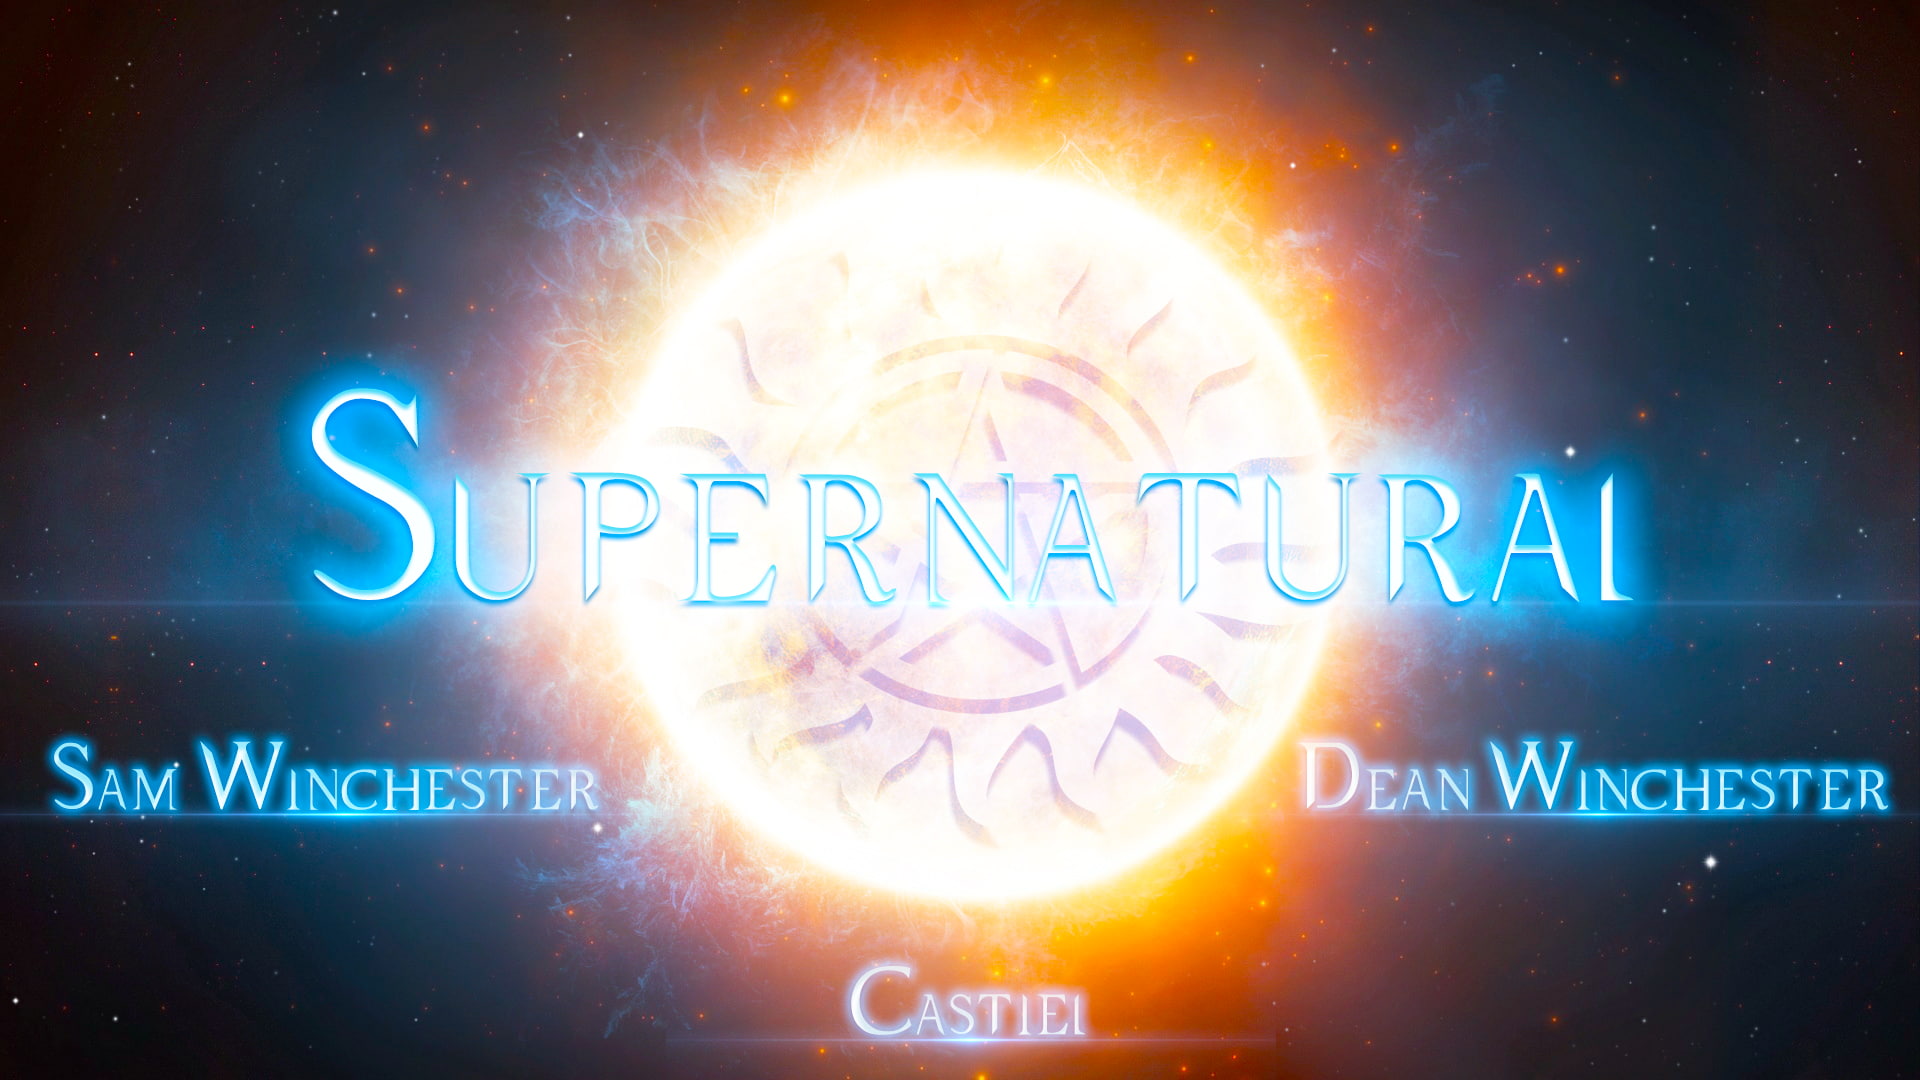 Supernatural, fan art, Sam Winchester, Dean Winchester, Castiel